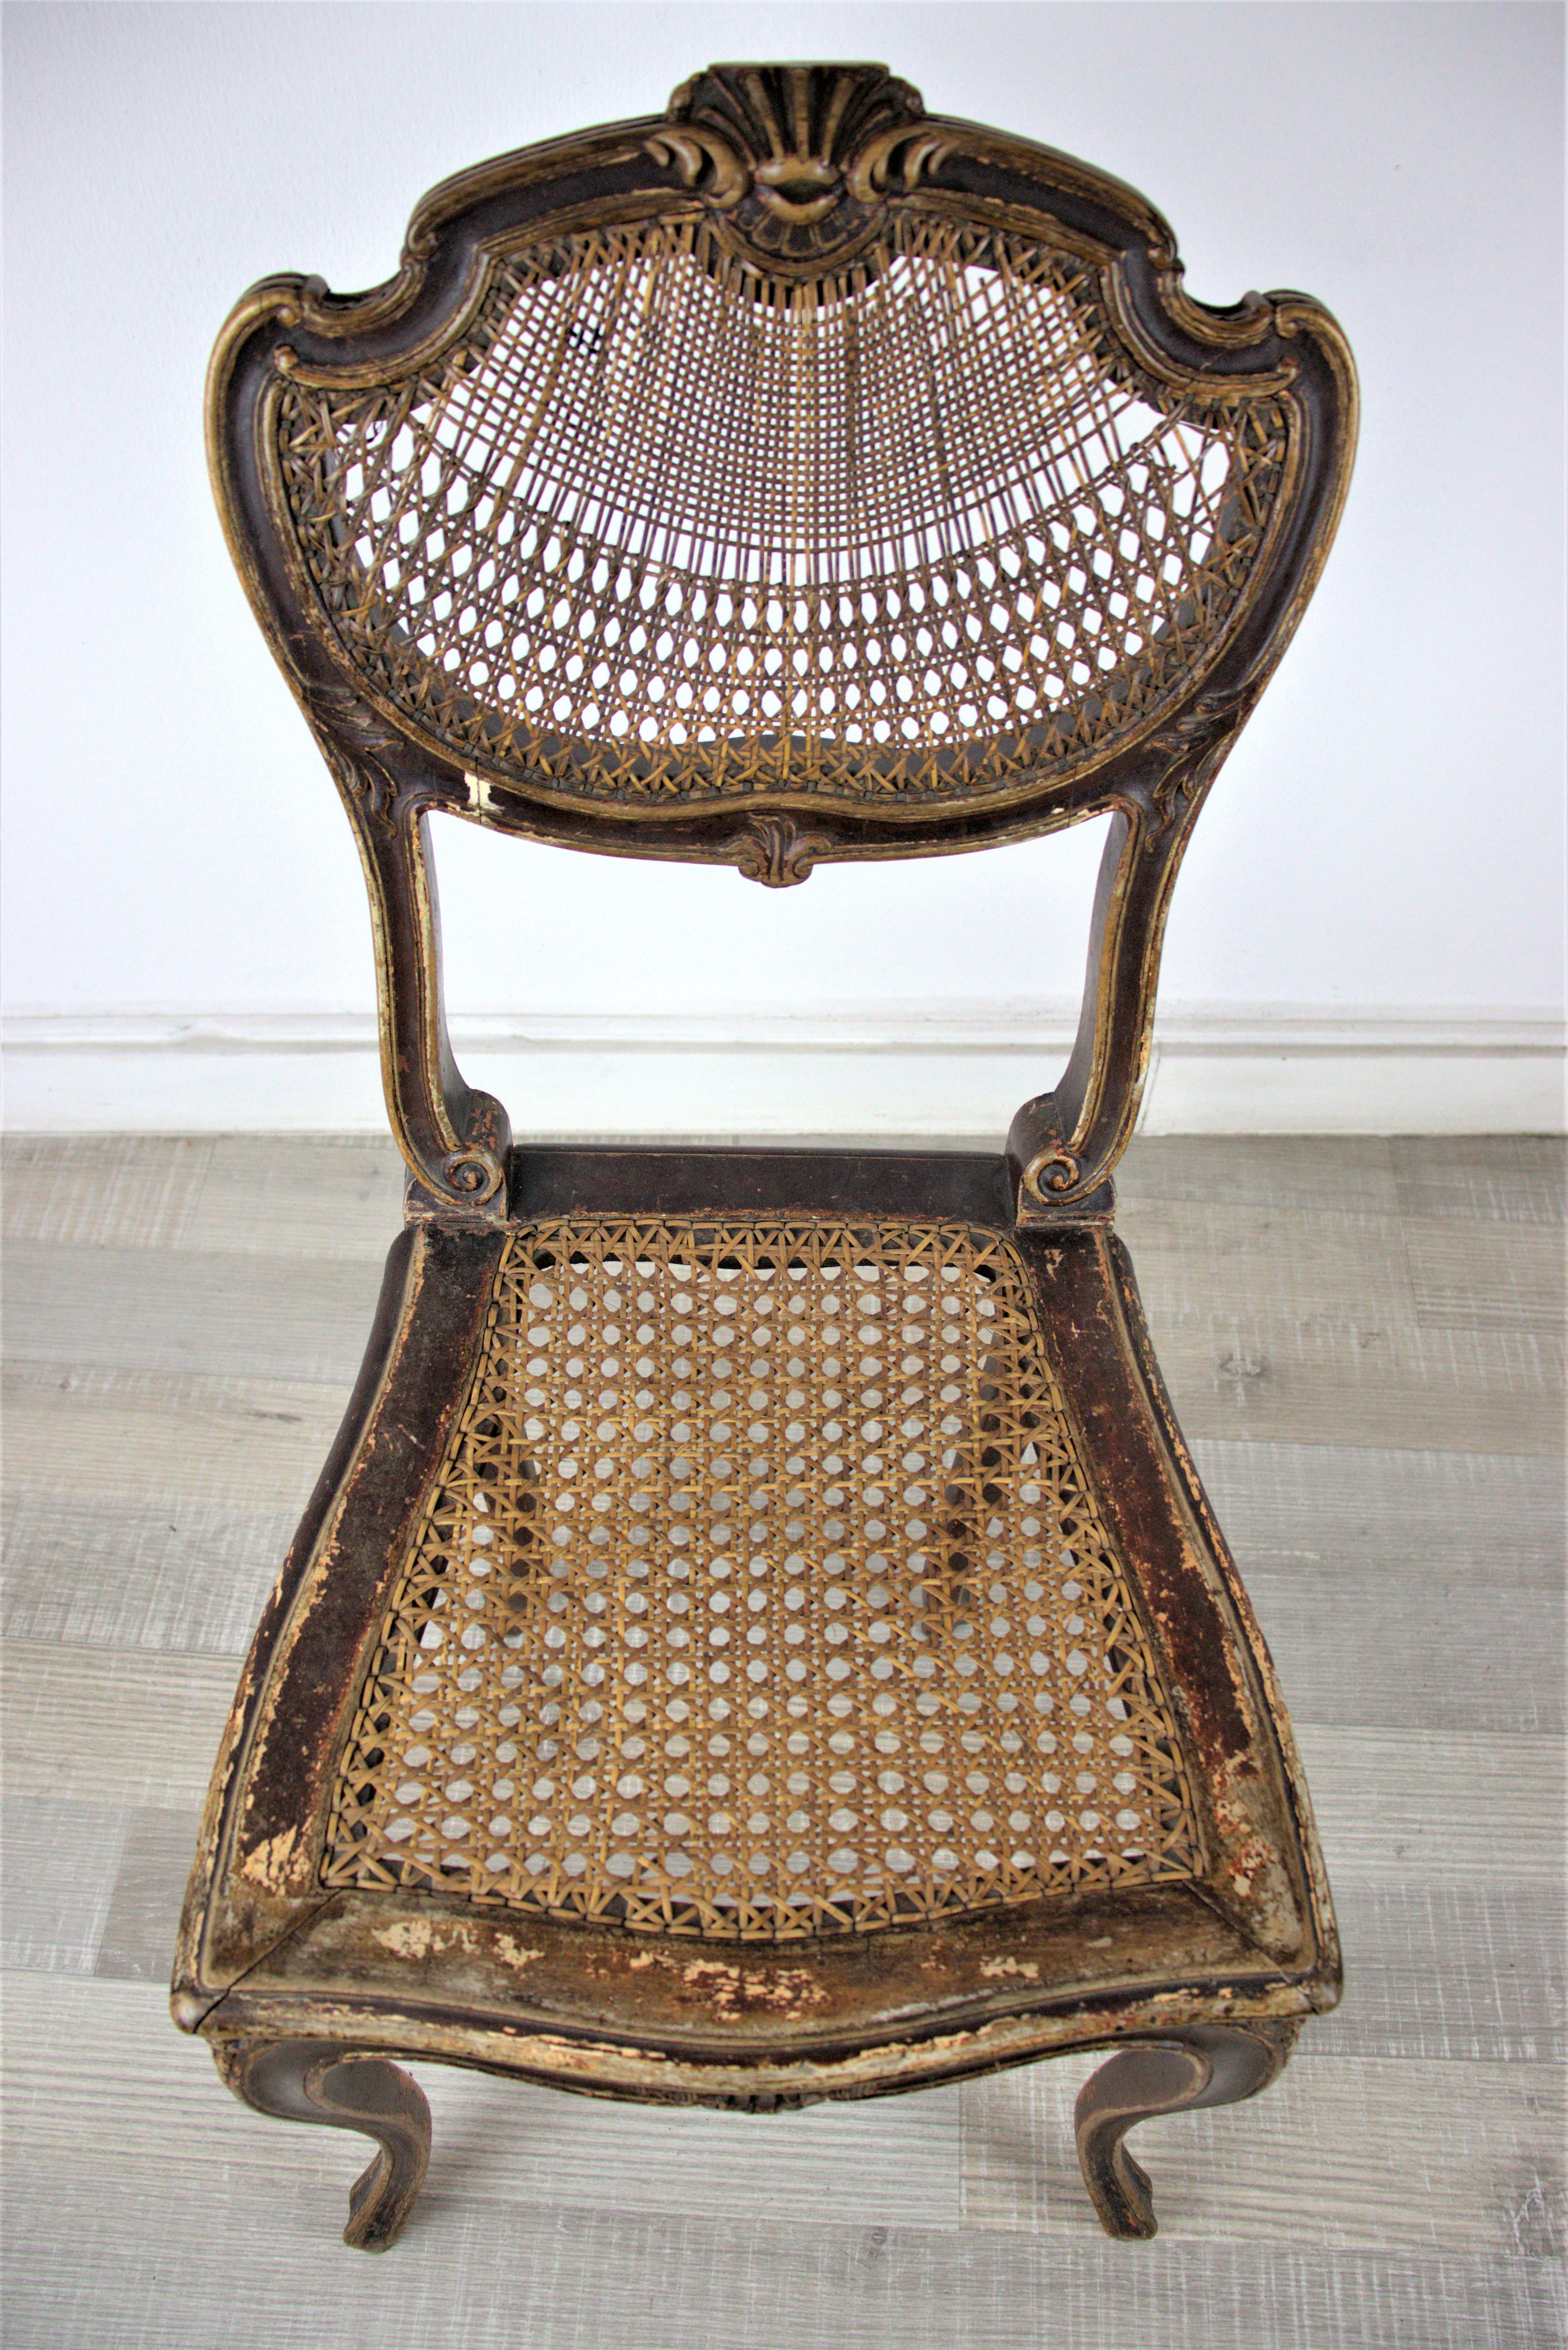 Kleiner Stuhl aus dem Wiener Rokoko, geriffelt und aus Holz, Ende des 18. Jahrhunderts.

Dieses Stück ist eine unberührte Antiquität! Verwenden Sie es als ausgefallene Dekoration in Ihrem Wohnsitz. 

Sie können ein ähnliches Sofa in unserem